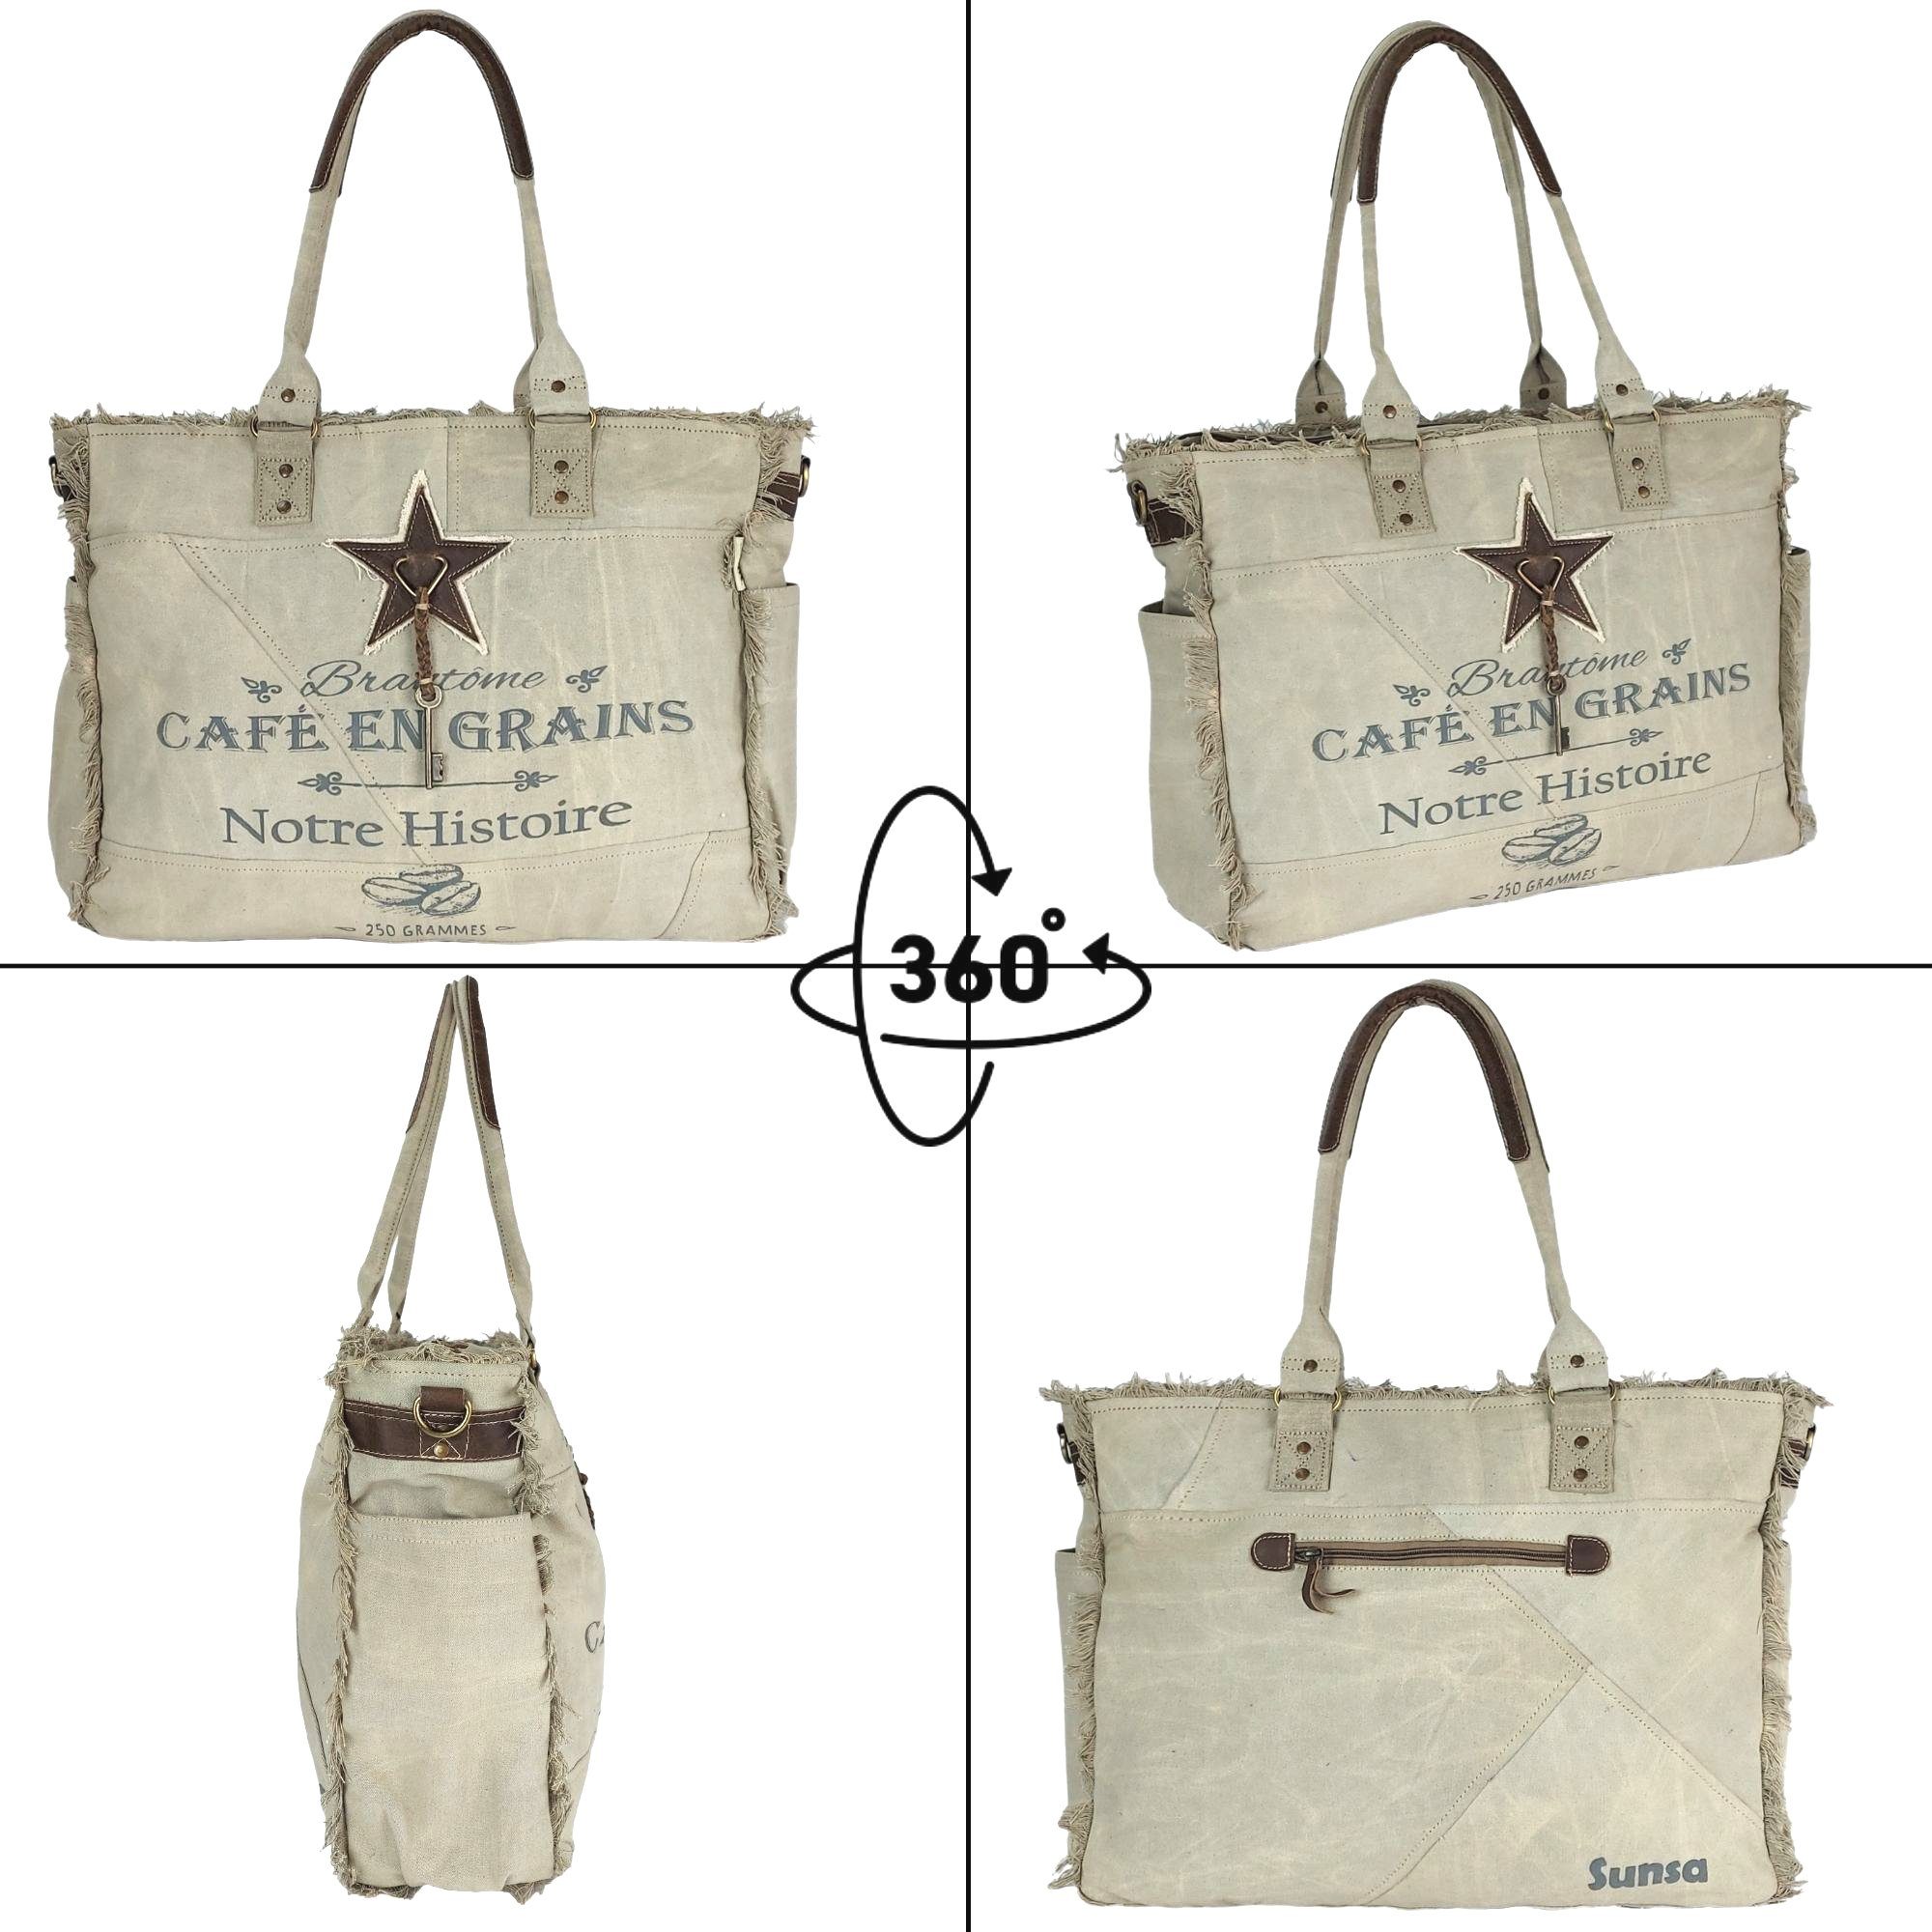 Sunsa Handtasche Damen große & Schultertasche Vintage Nachhaltige Design recyceltes enthält Material, aus Geschenkideen, Canvas Handtasche. XXL Strandtasche/Weekender. als Deutsches Tasche Leder